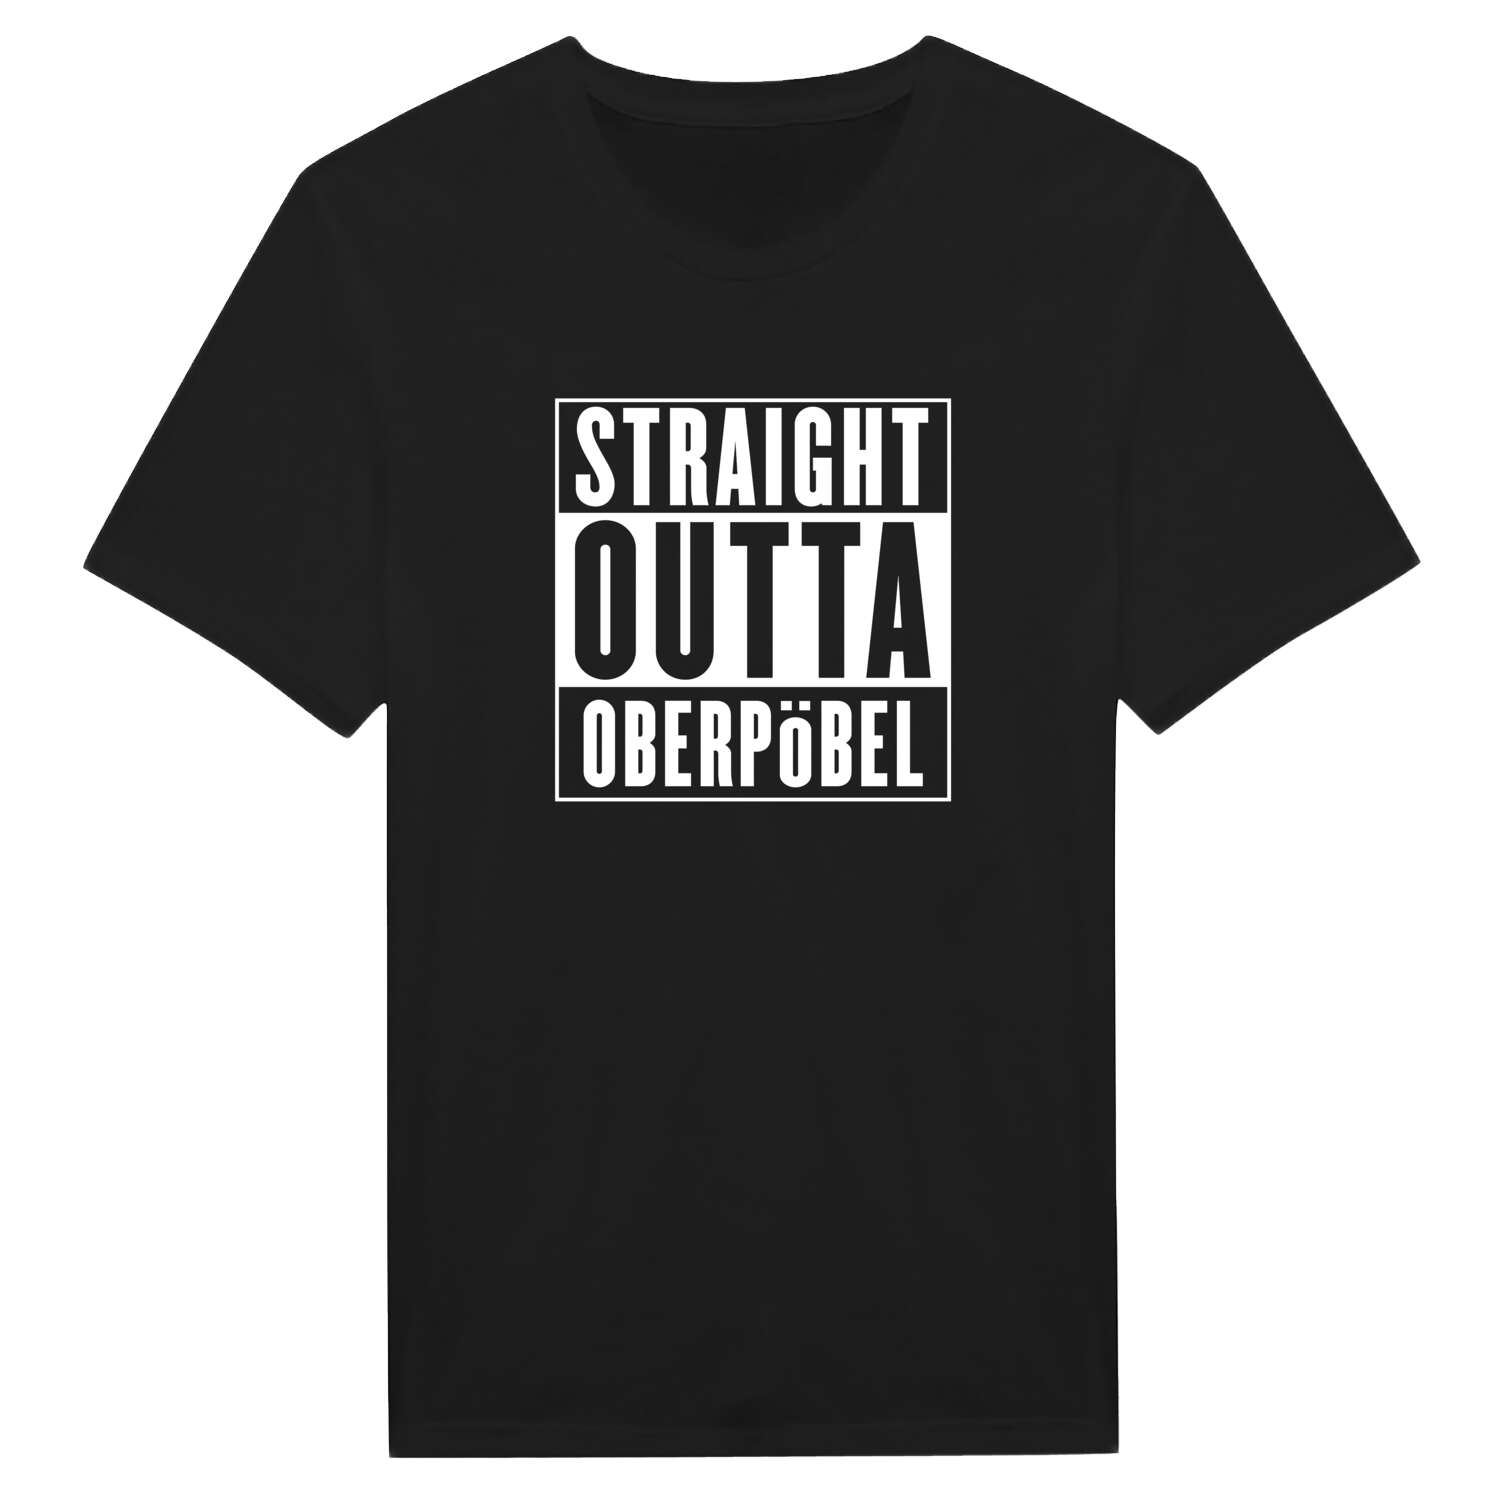 Oberpöbel T-Shirt »Straight Outta«